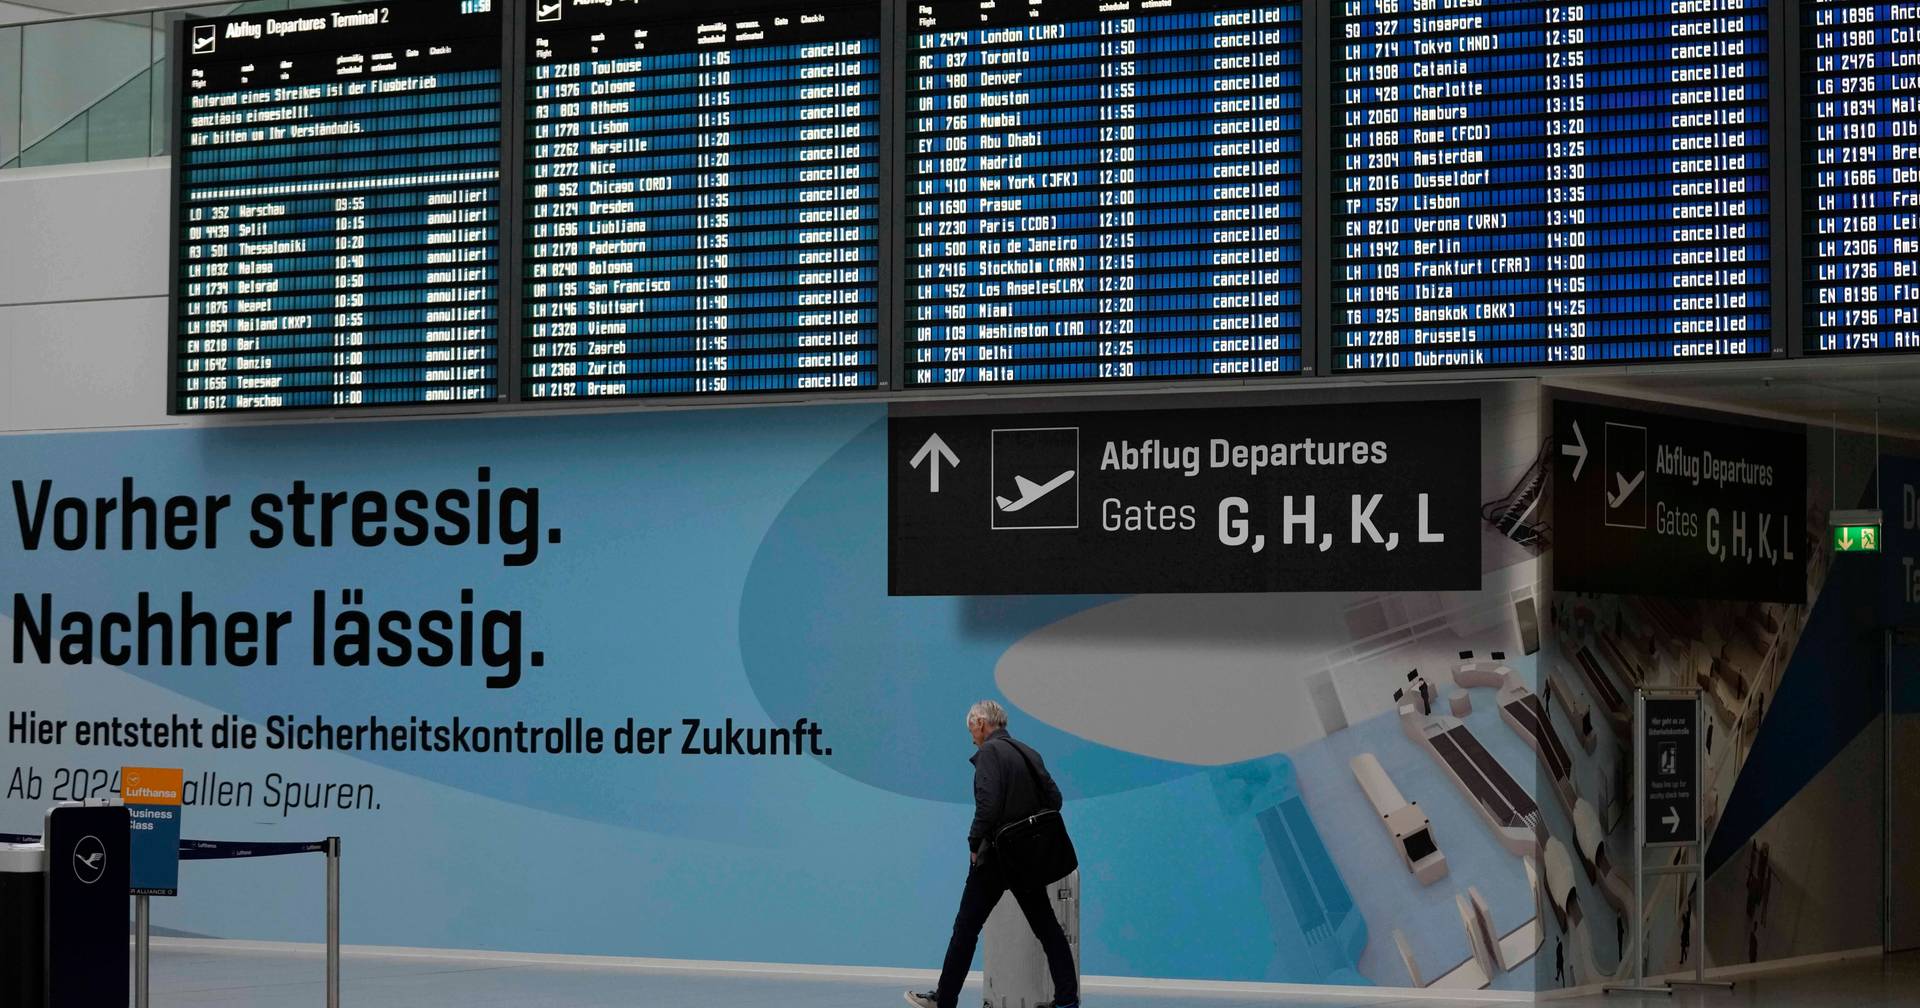 Flüge wurden in Deutschland vor dem landesweiten Streik verspätet und gestrichen